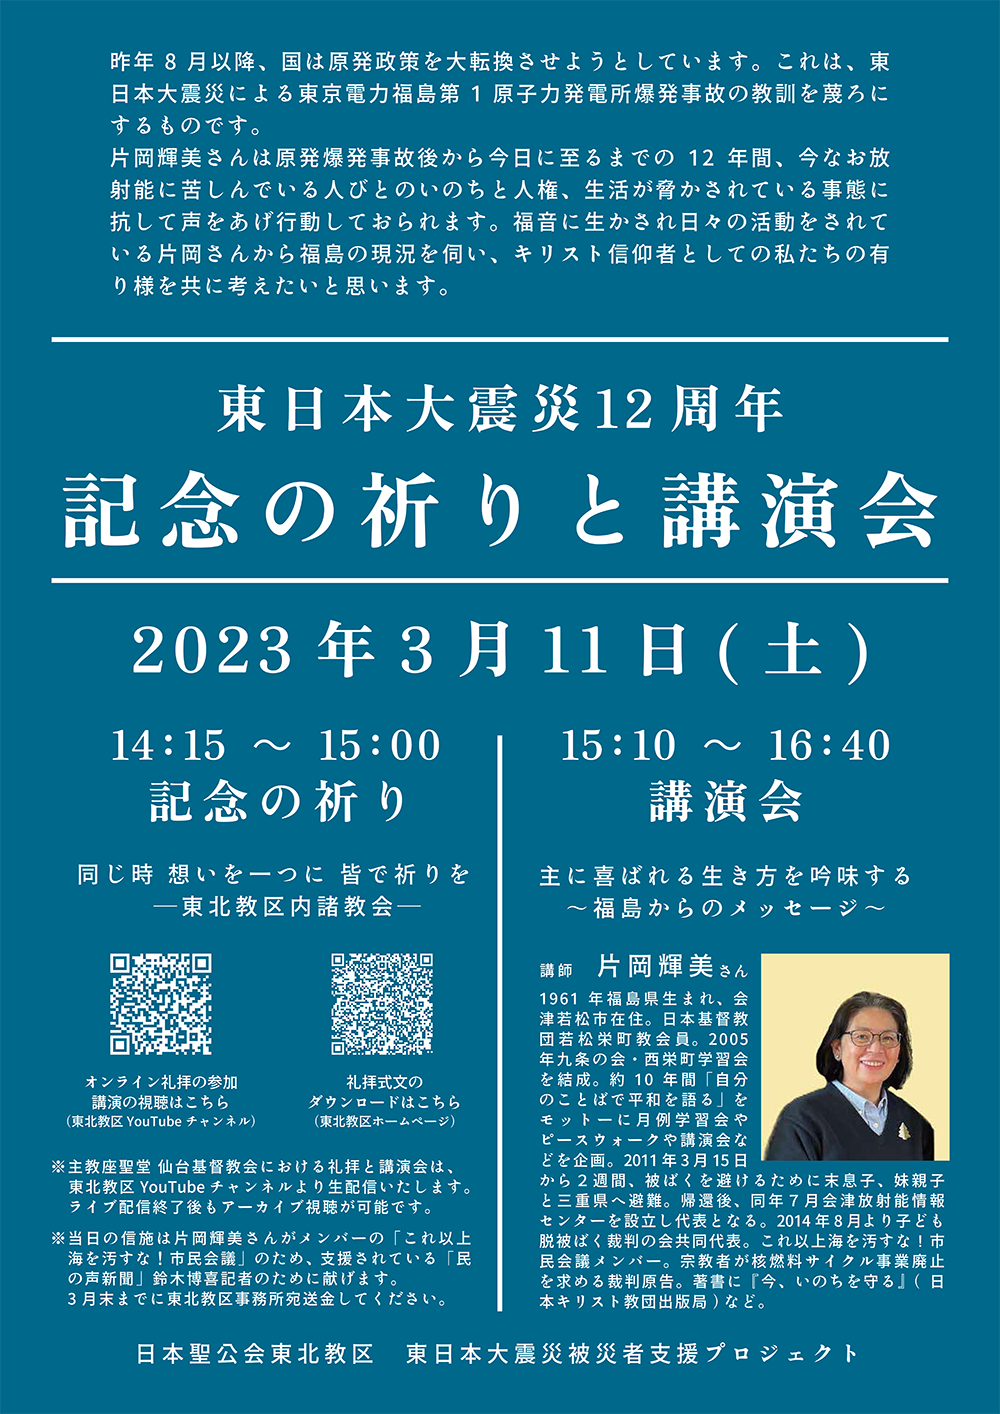 2023年東日本大震災12周年記念の祈り・講演会の案内ポスターの写真。青い背景に白抜きの文字で、案内文章とQRコード、講演者の写真がレイアウトされている。